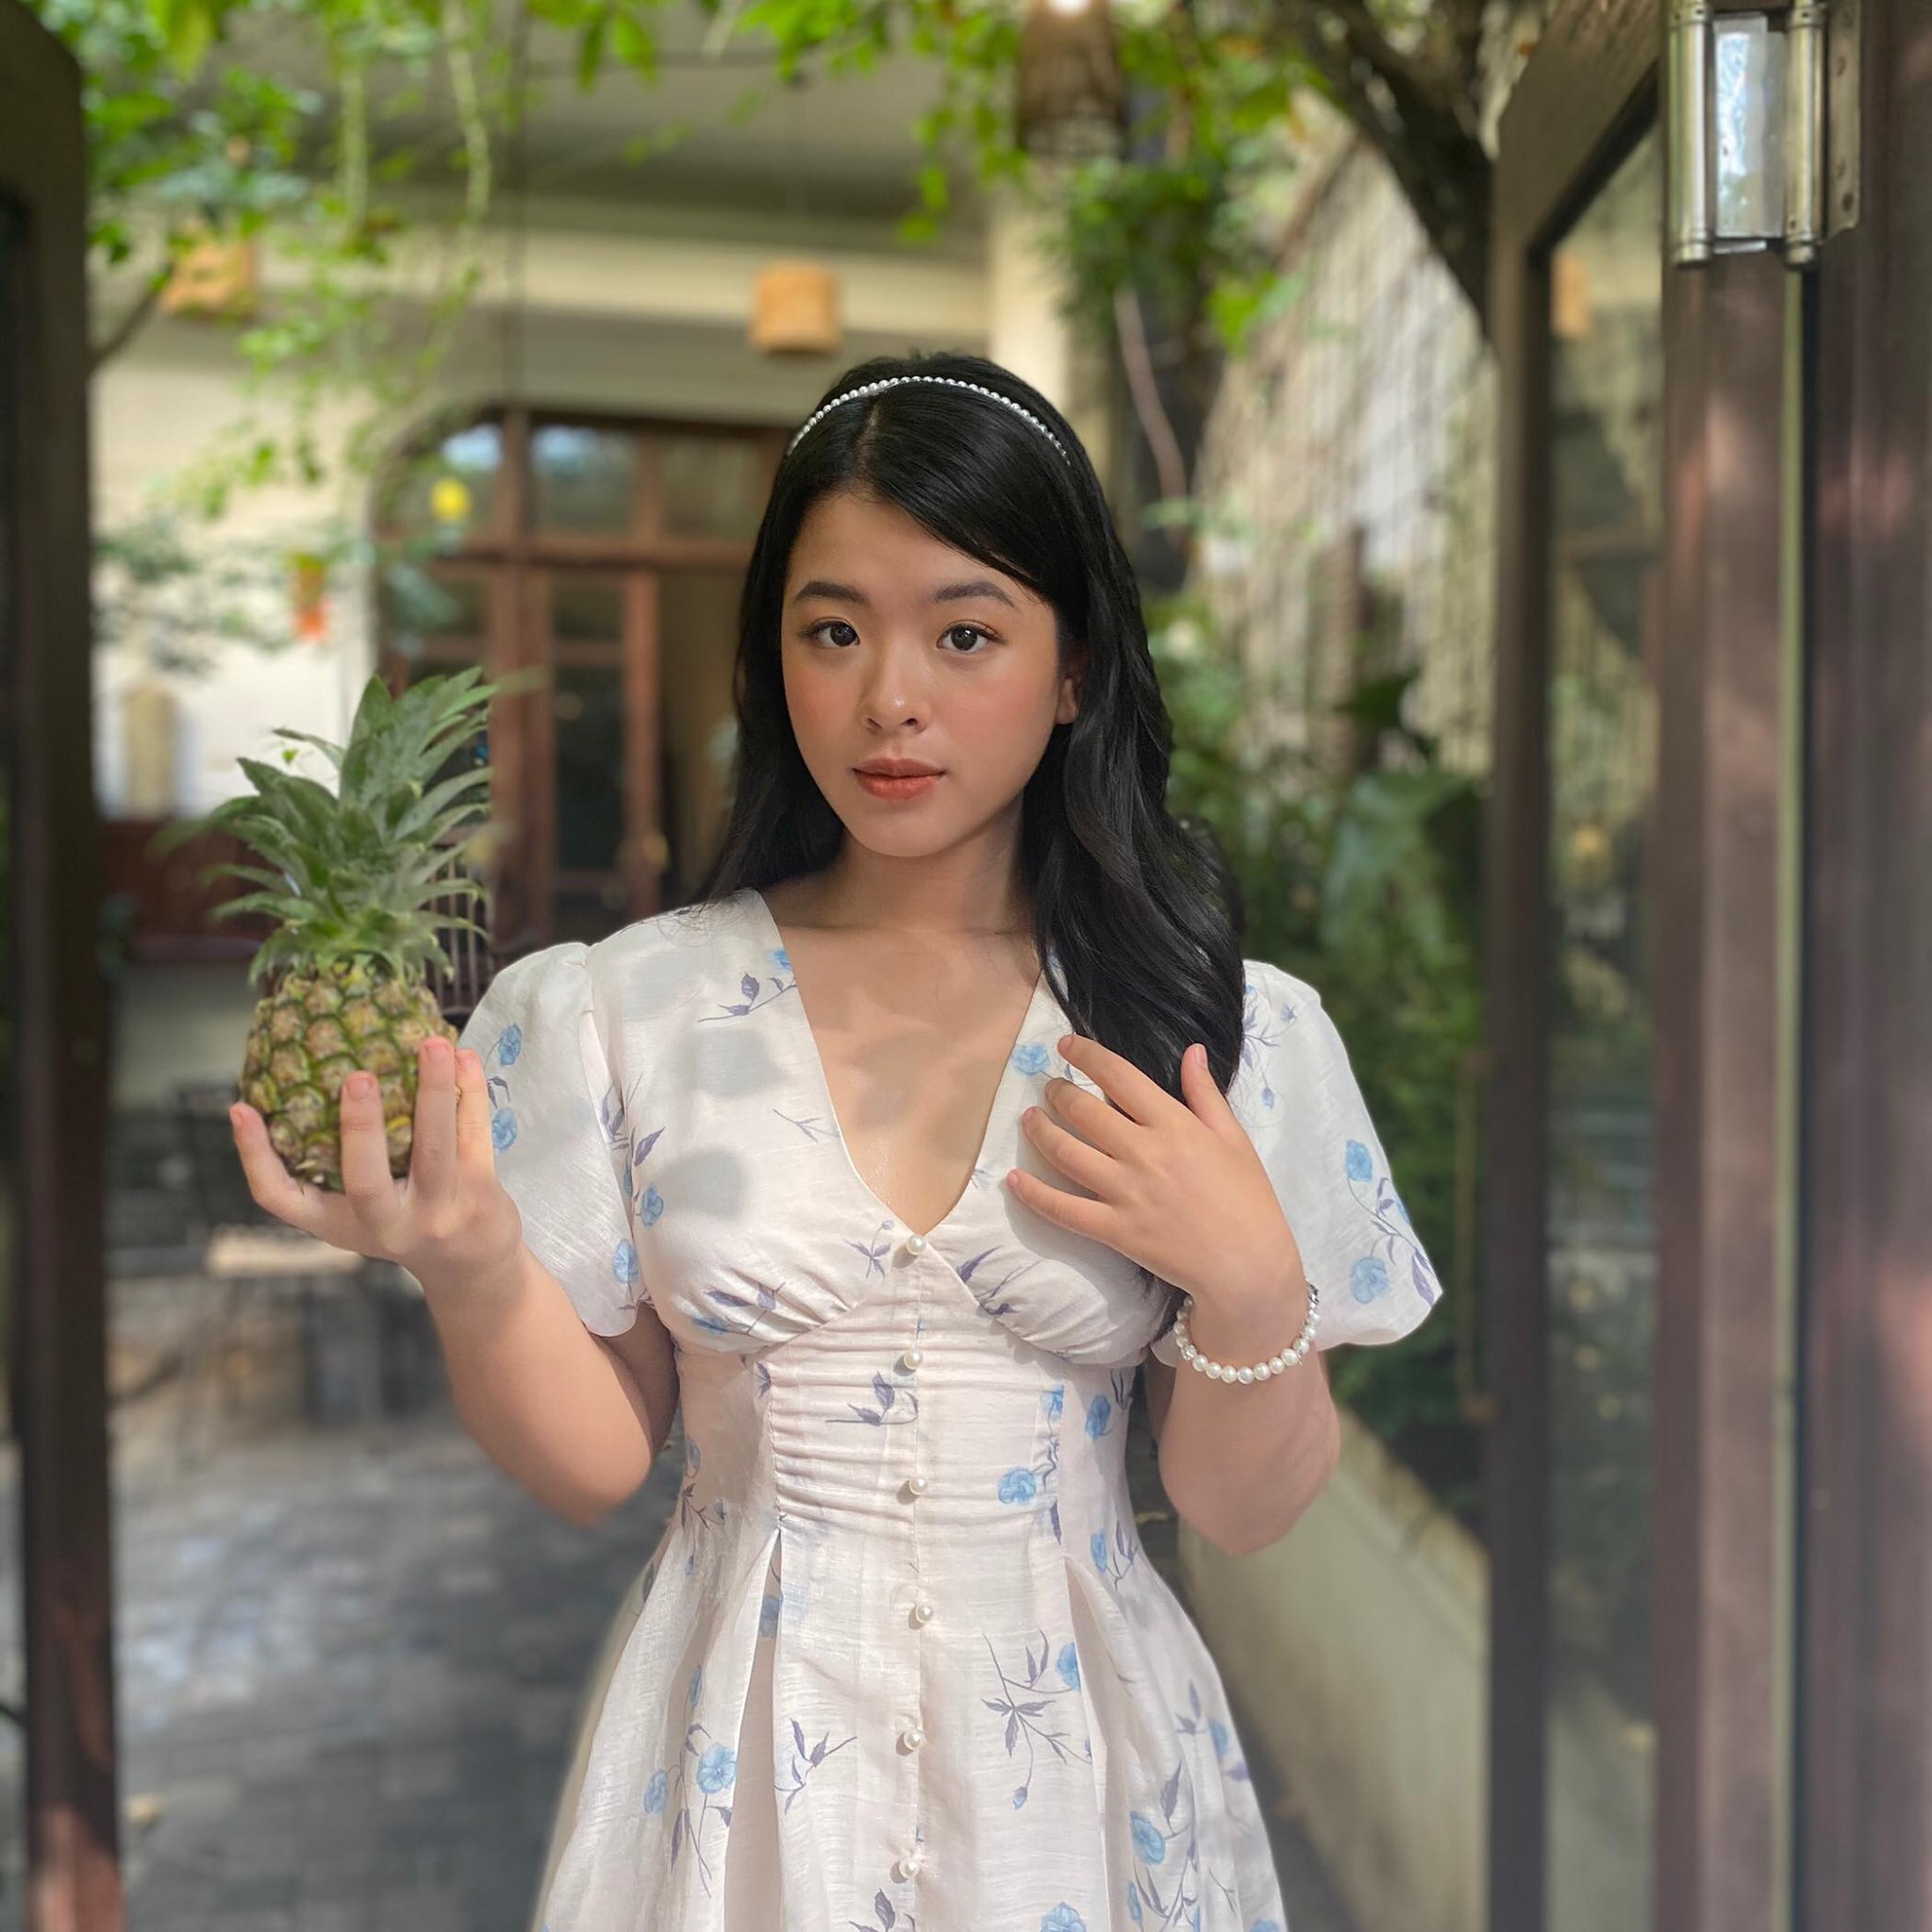 Bình rượu mơ của sao Việt: Mới 15 tuổi đã cao tới 1m70, dáng chuẩn hoa hậu tương lai nhưng bất ngờ nhất là phong cách thời trang-20